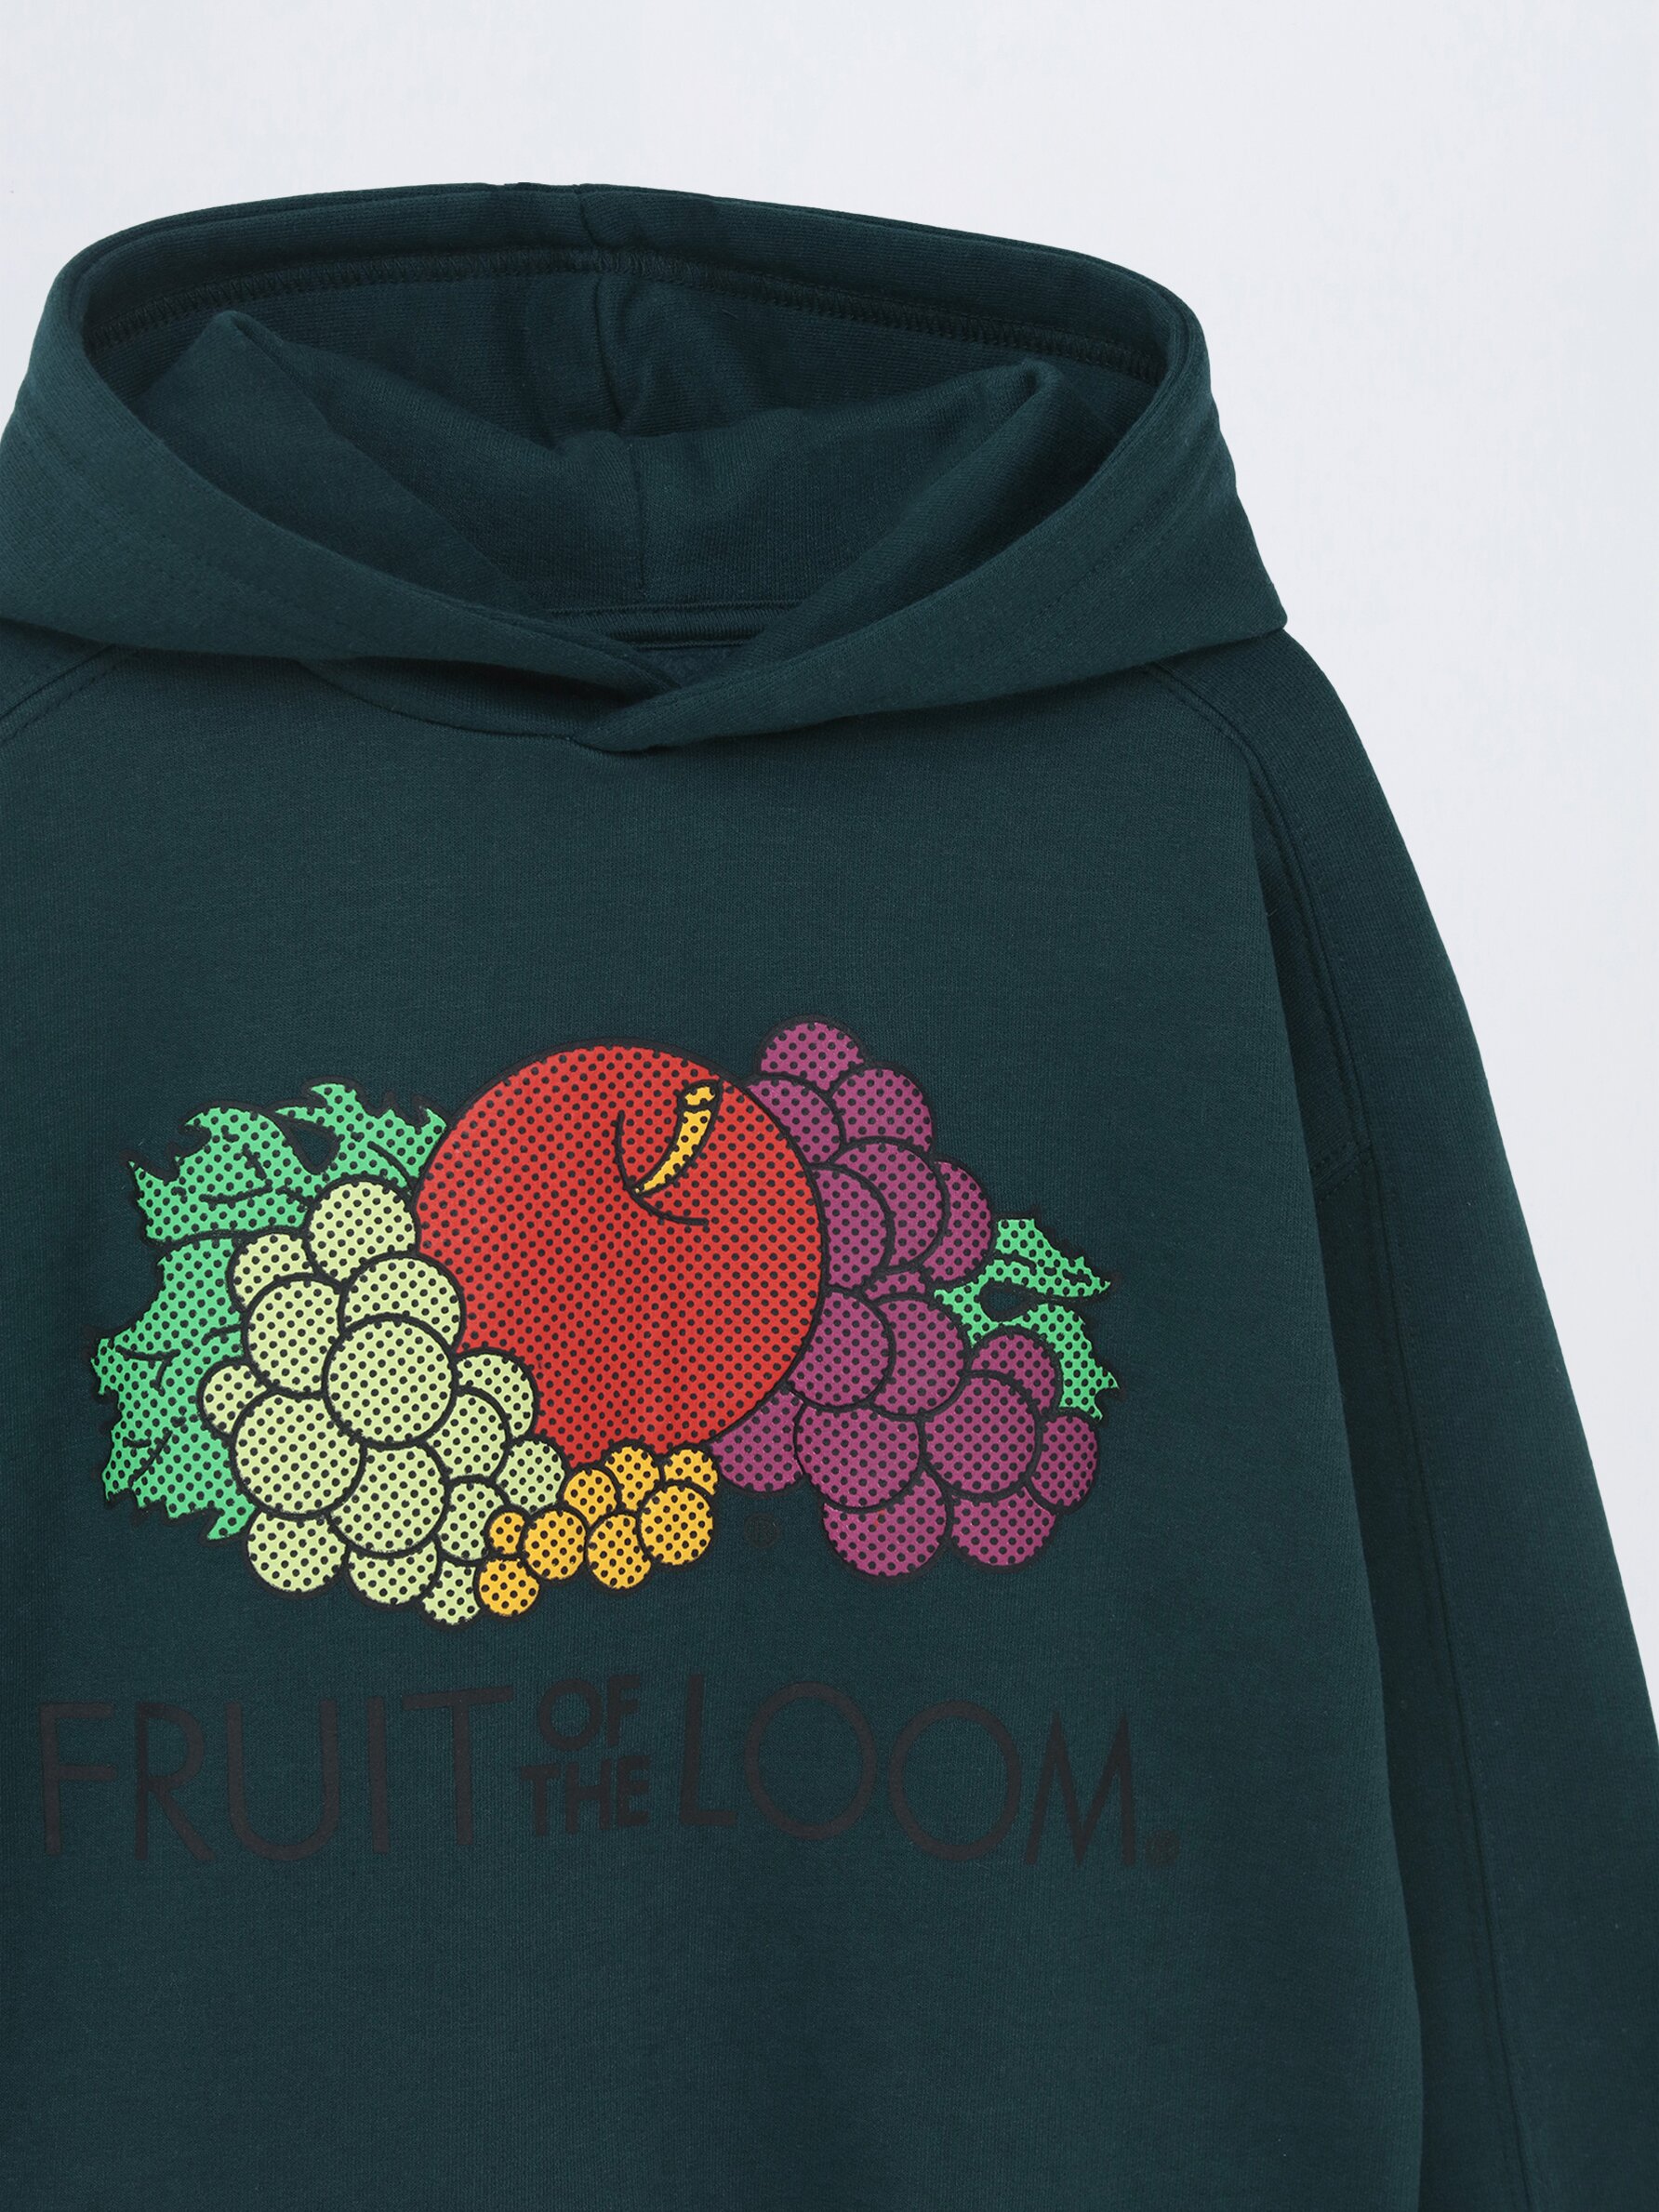 Printed Fruit of the Loom® hoodie